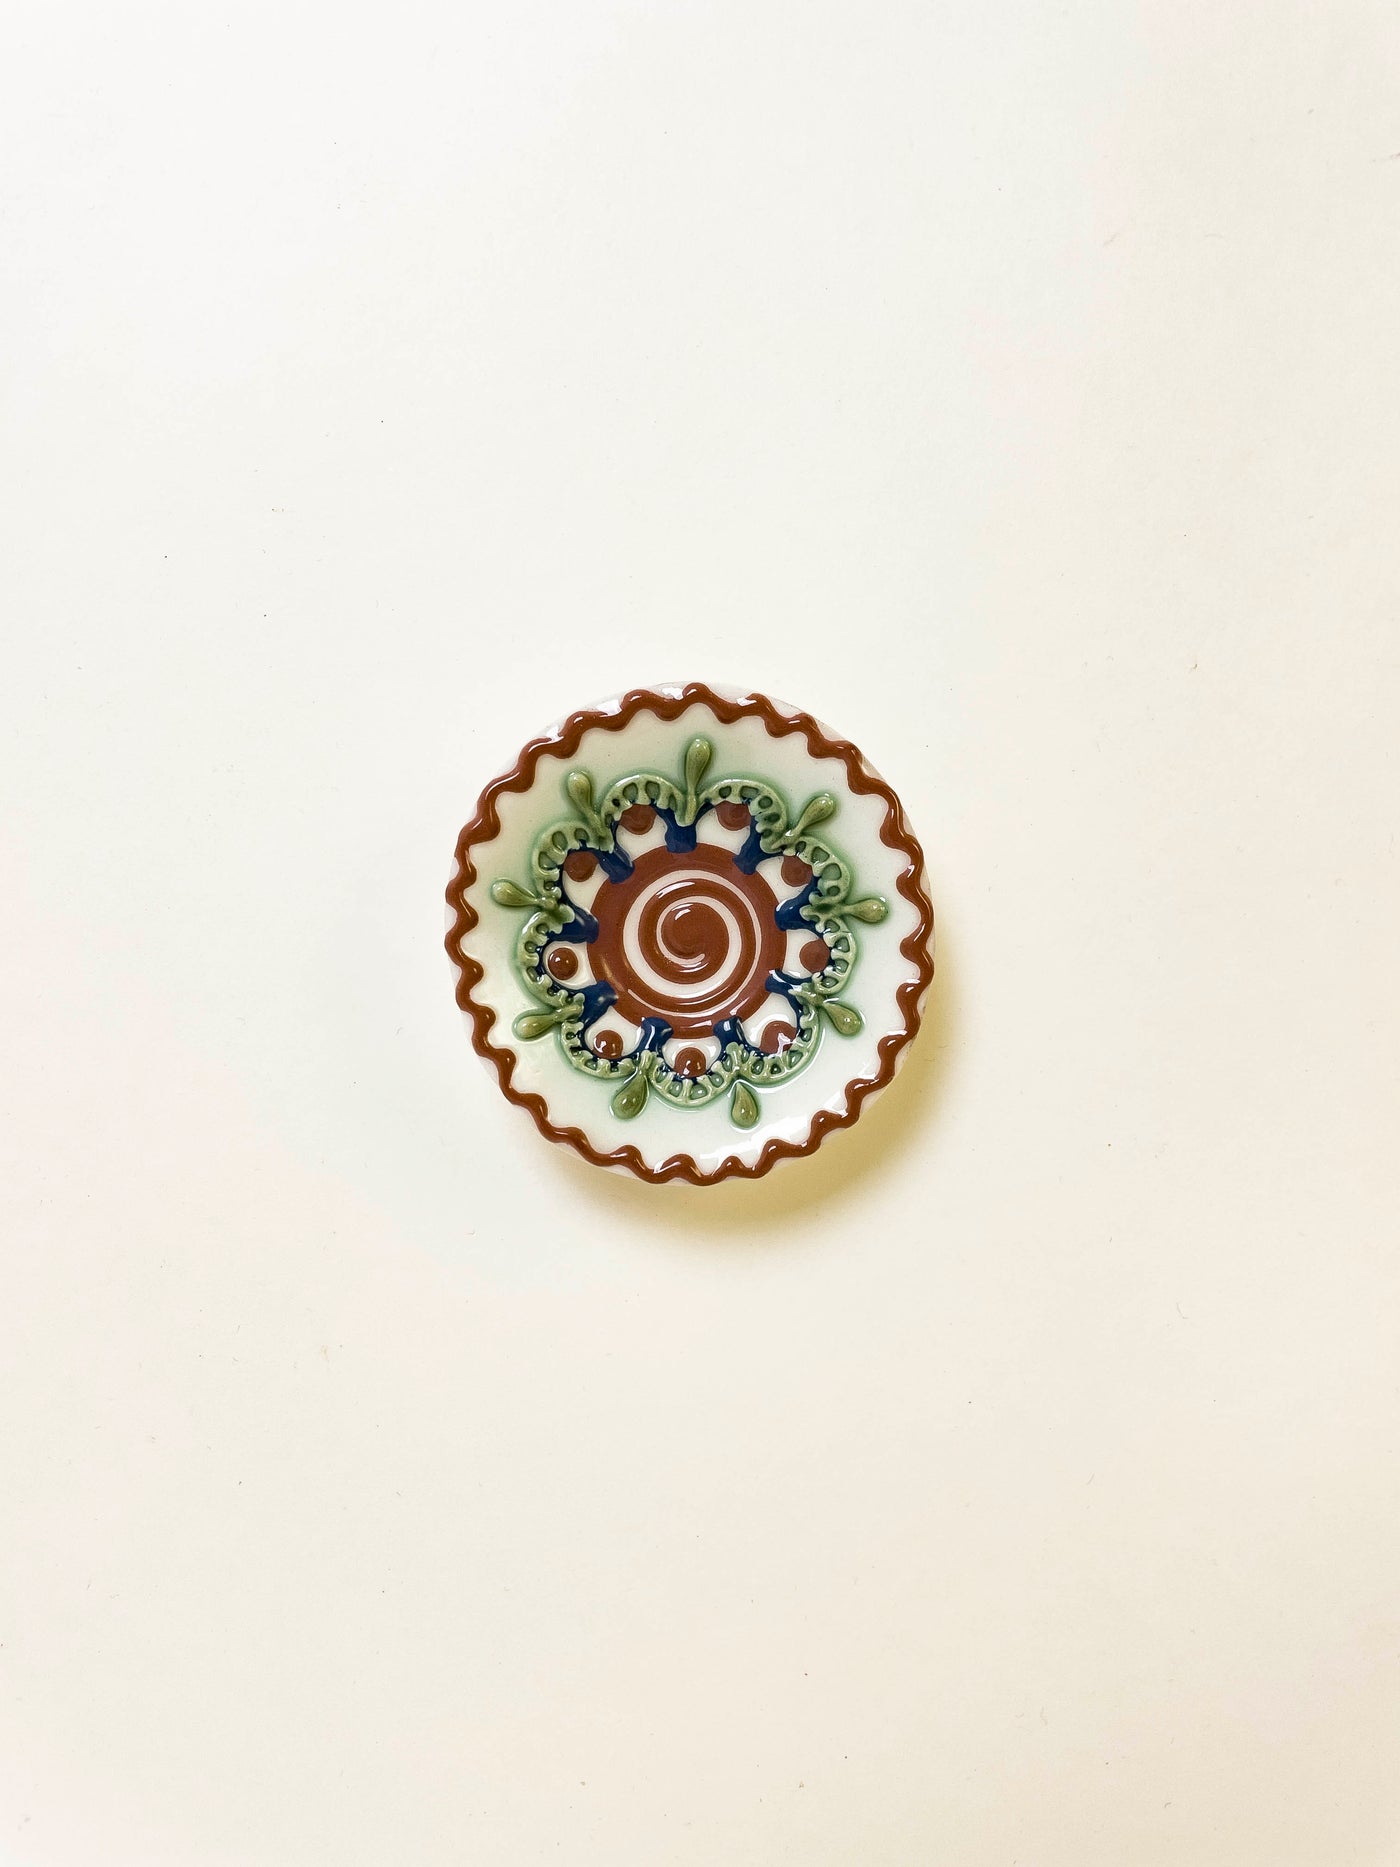 Ceramică de Baia Mare - Magnet